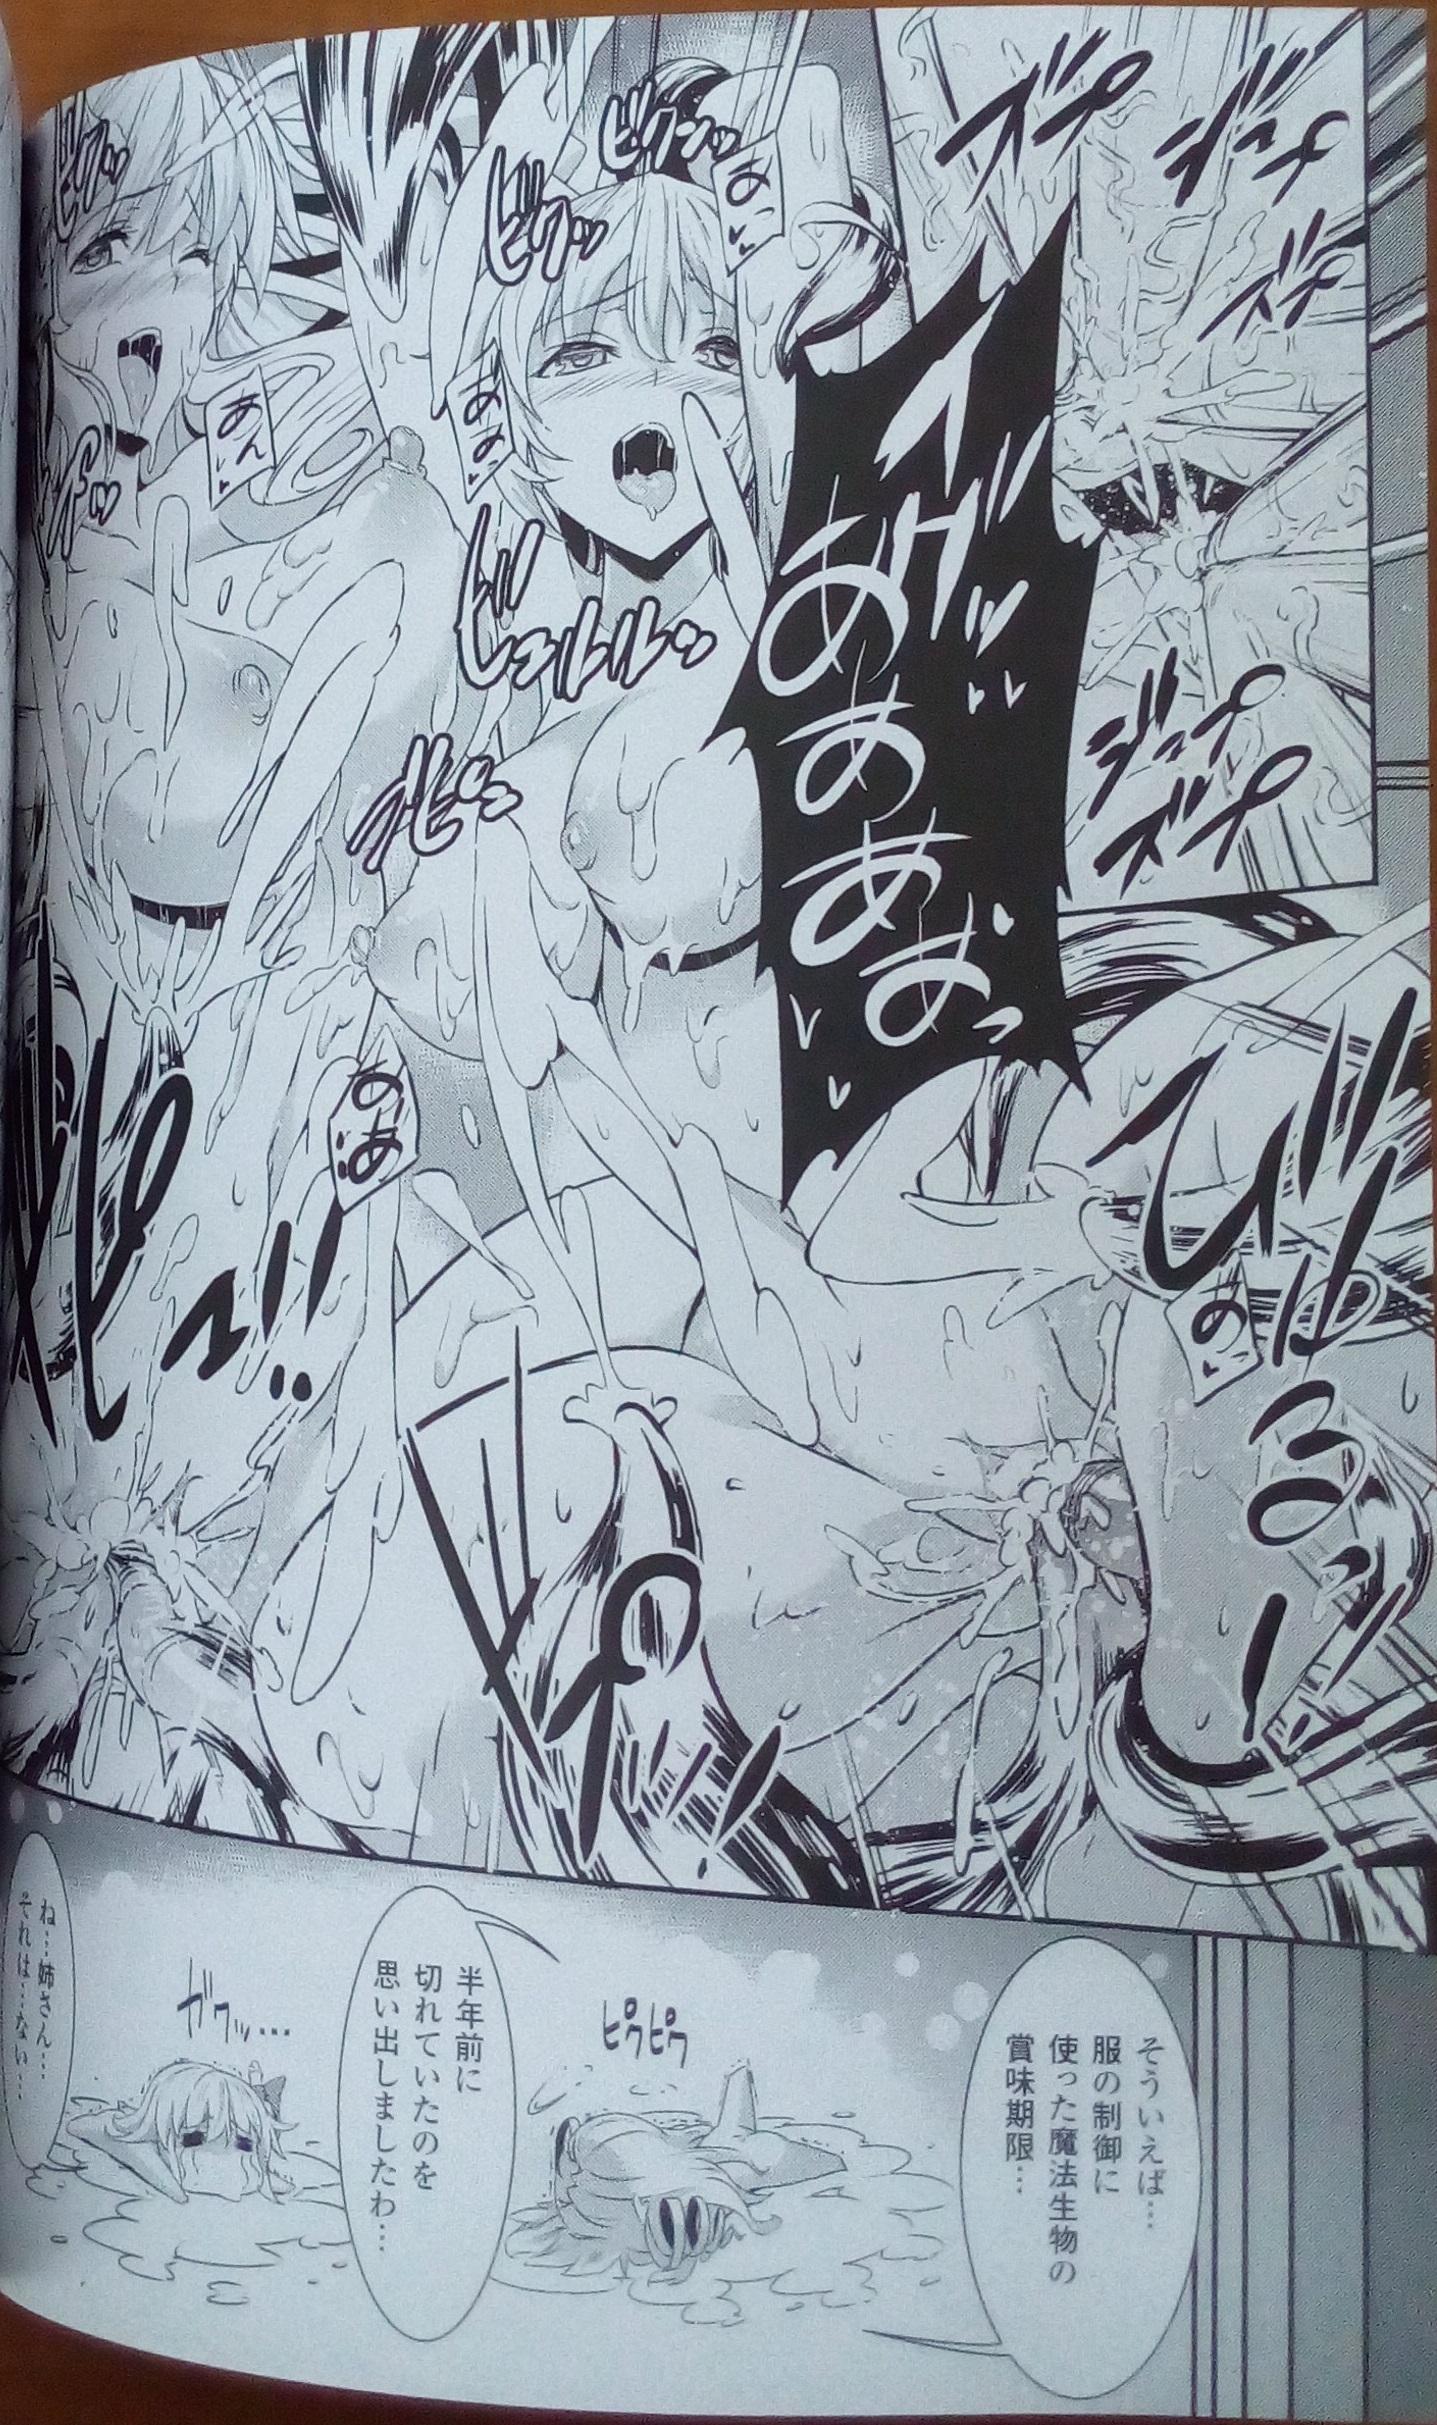 Orgasms [Erect Sawaru] Shinkyoku no Grimoire III -PANDRA saga 2nd story- Append book [Photoed] Femdom Pov - Page 11